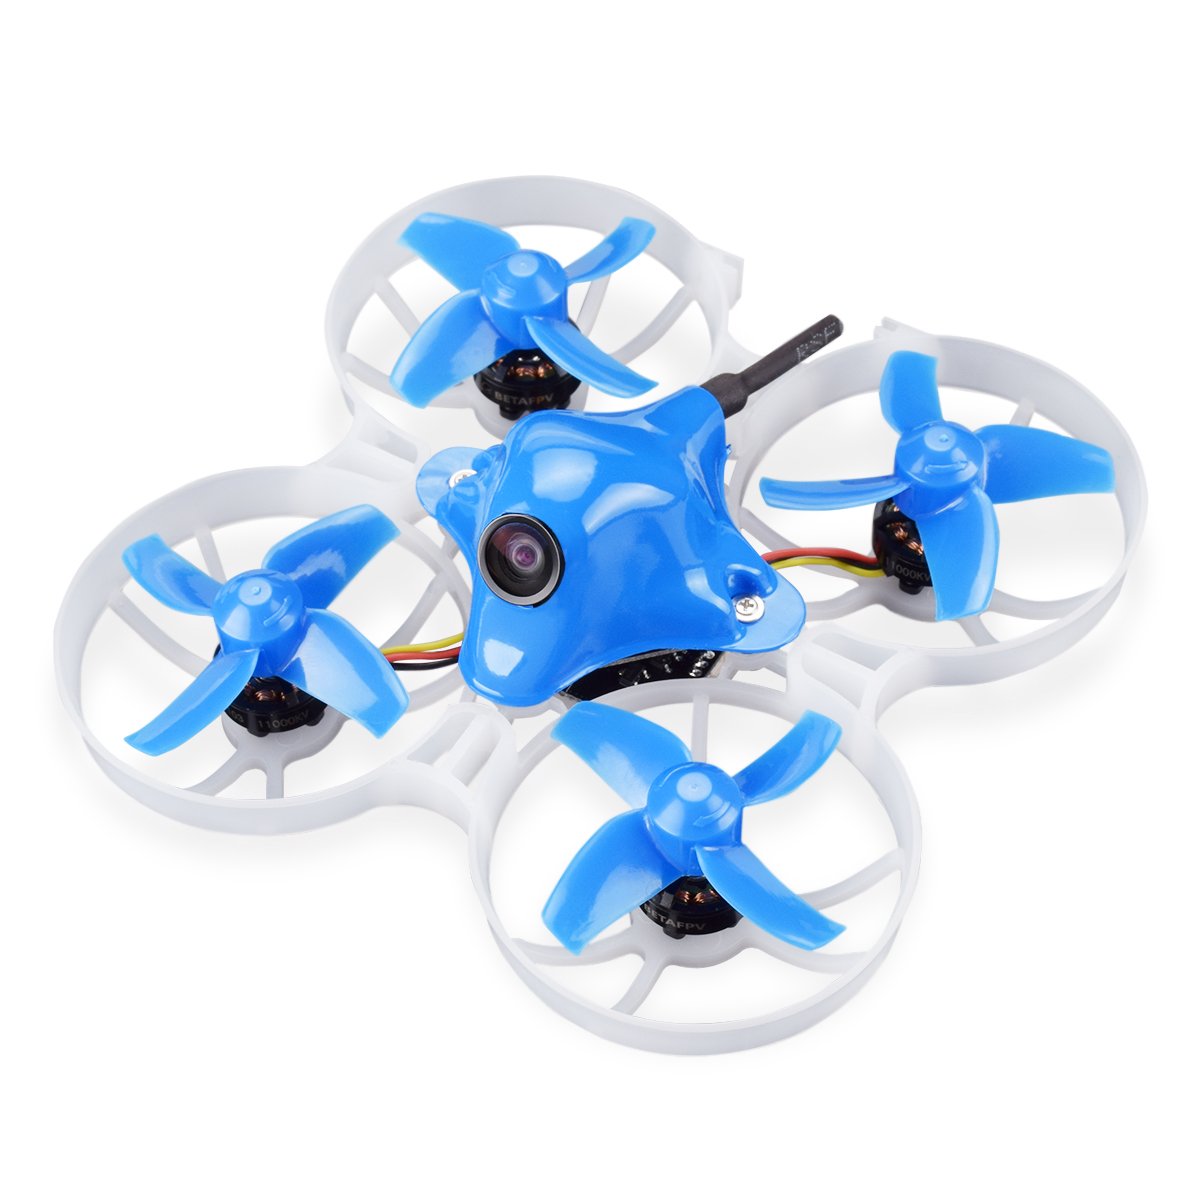 Guide du drone pour débutant : liste d'achat pour débuter le drone FPV